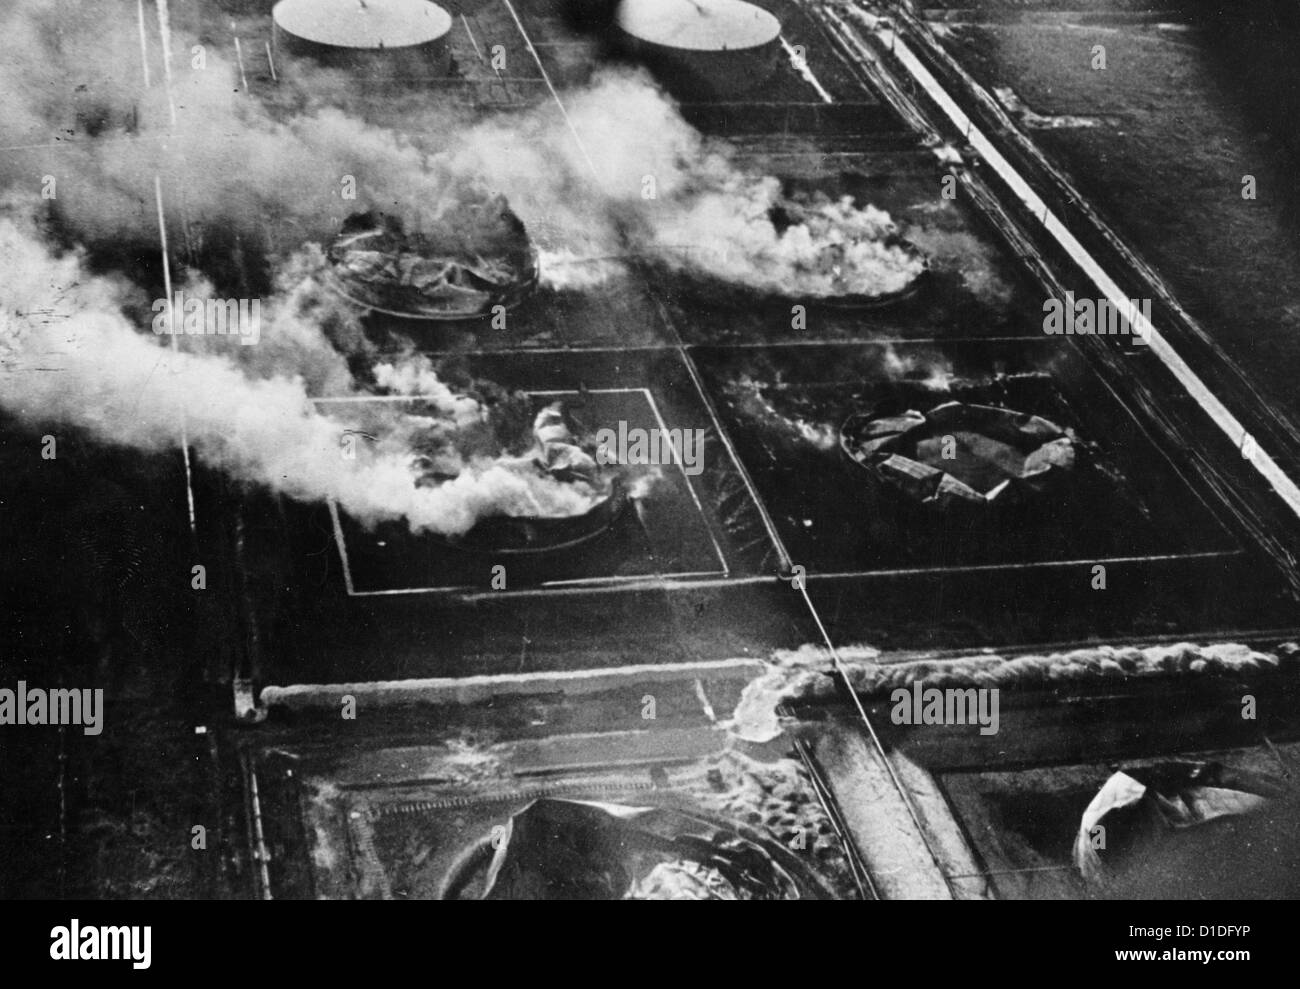 raid à la bombe allemand sur des réservoirs de pétrole dans le port du Havre, France, en juin 1940. Fotoarchiv für Zeitgeschichte Banque D'Images